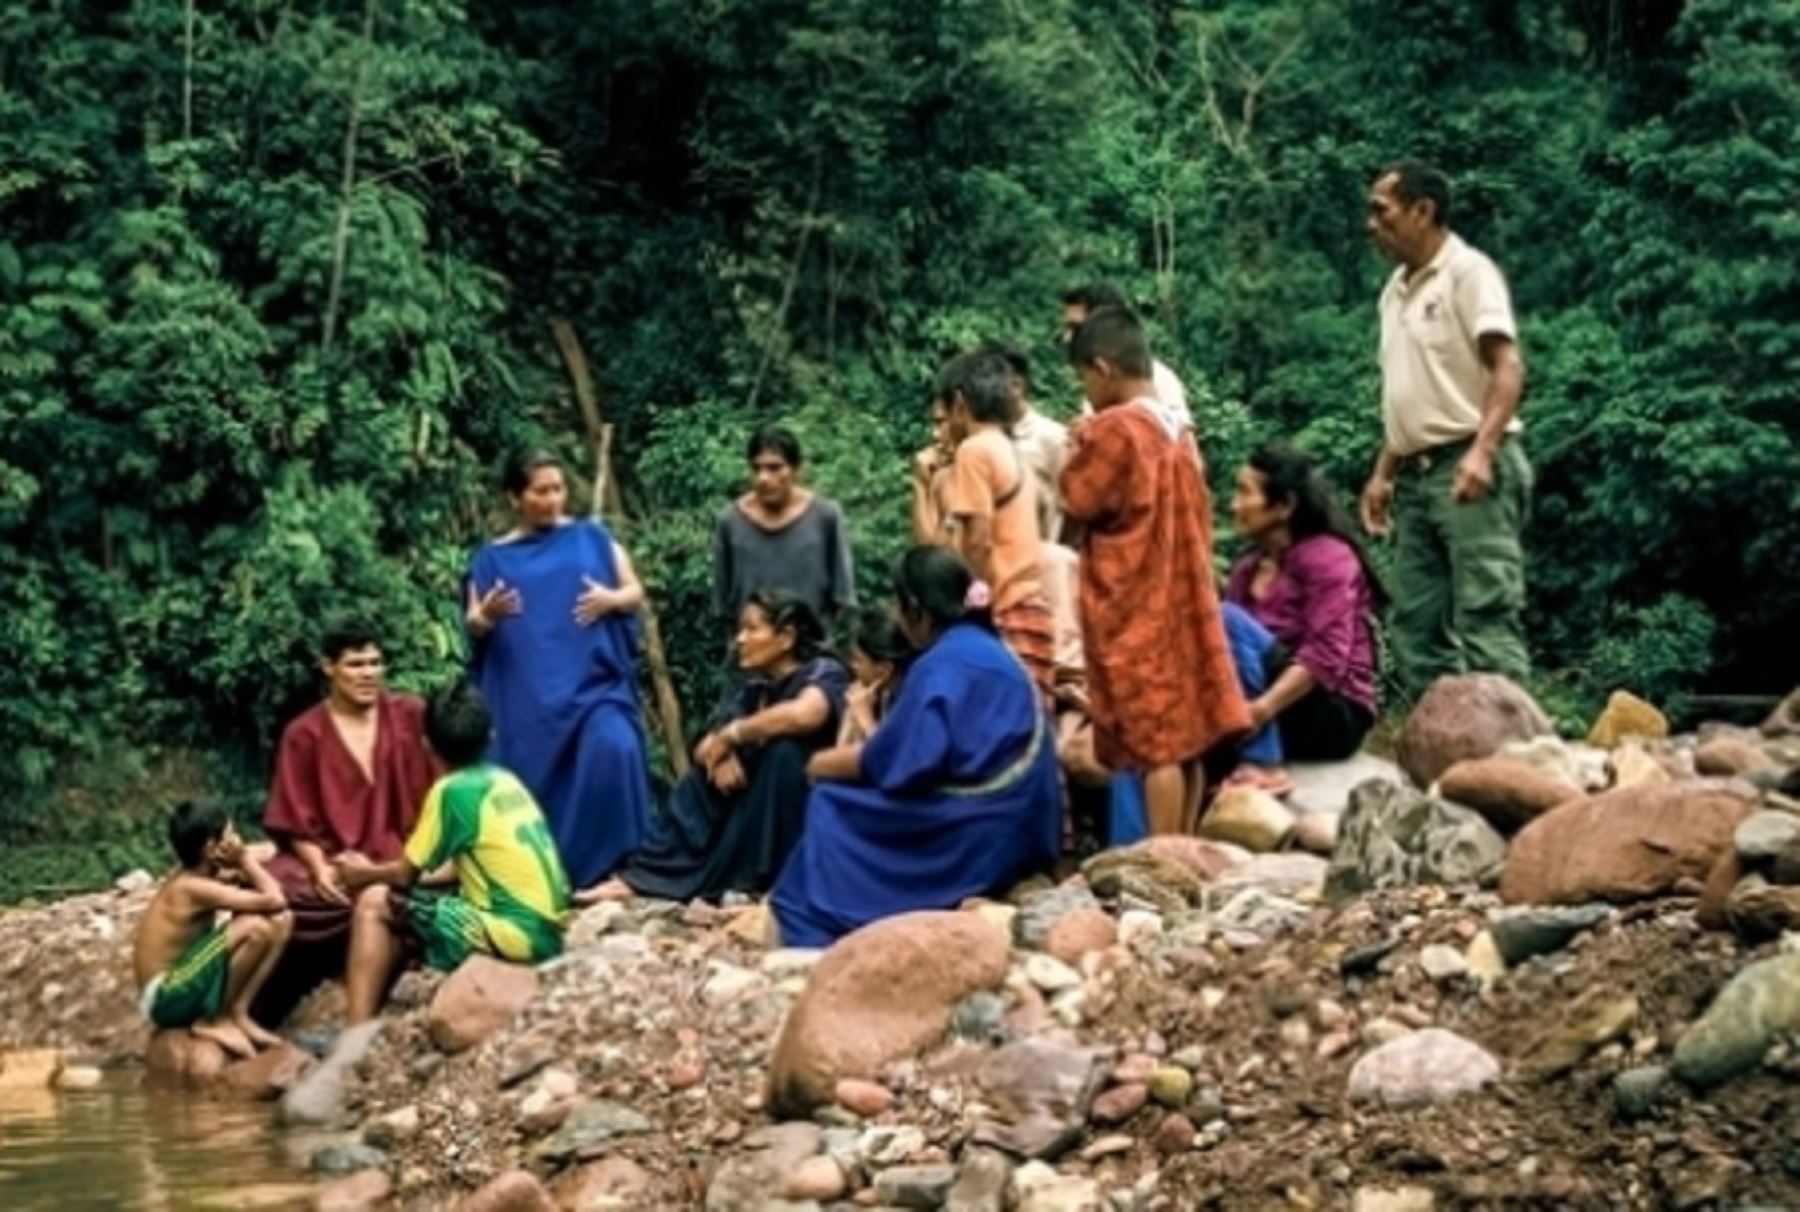 La comunidad nativa de Kunt Entsa, que agrupa a 39 familias y está ubicada en el distrito de Río Santiago, provincia de Condorcanqui, en el departamento de Amazonas, ha asumido el compromiso de conservar 20,517 hectáreas de áreas boscosas y promover el aprovechamiento sostenible de sus recursos.